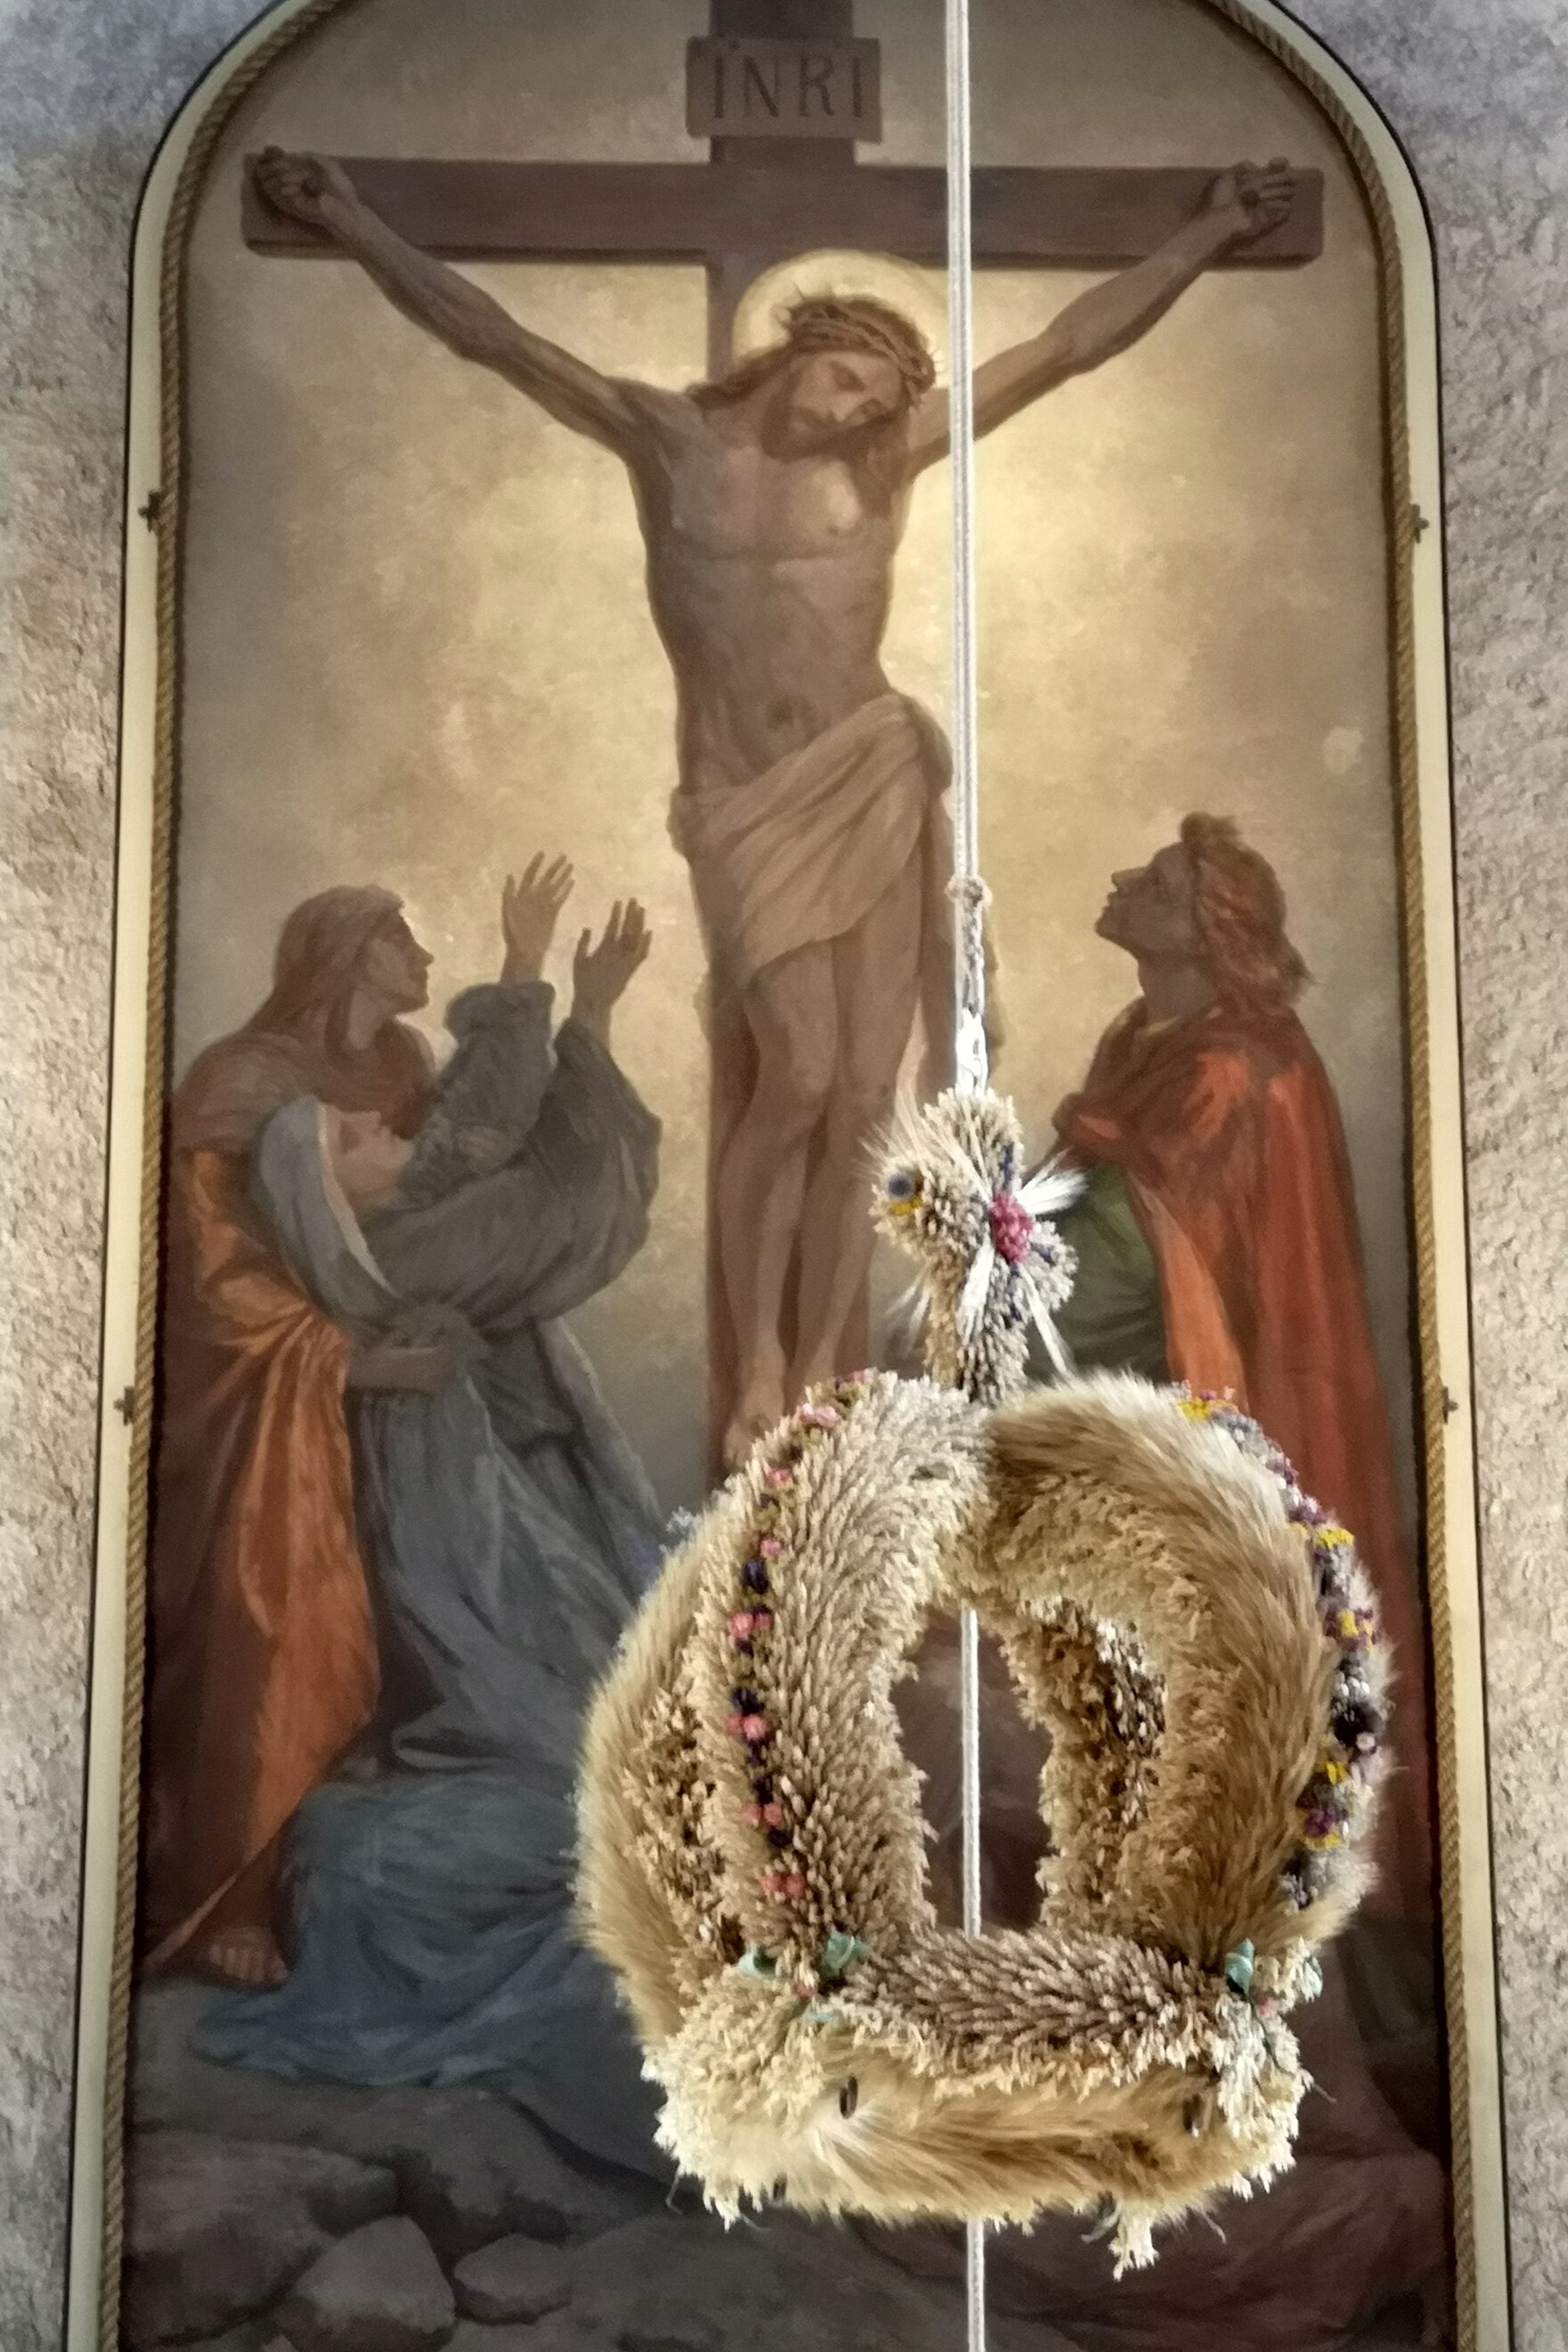 Erntekrone aus Getreide und Blumen mit Kreuz aus Getreide als Abschluss, schwebend vor Altarbild mit Kreuzigungsdarstellung